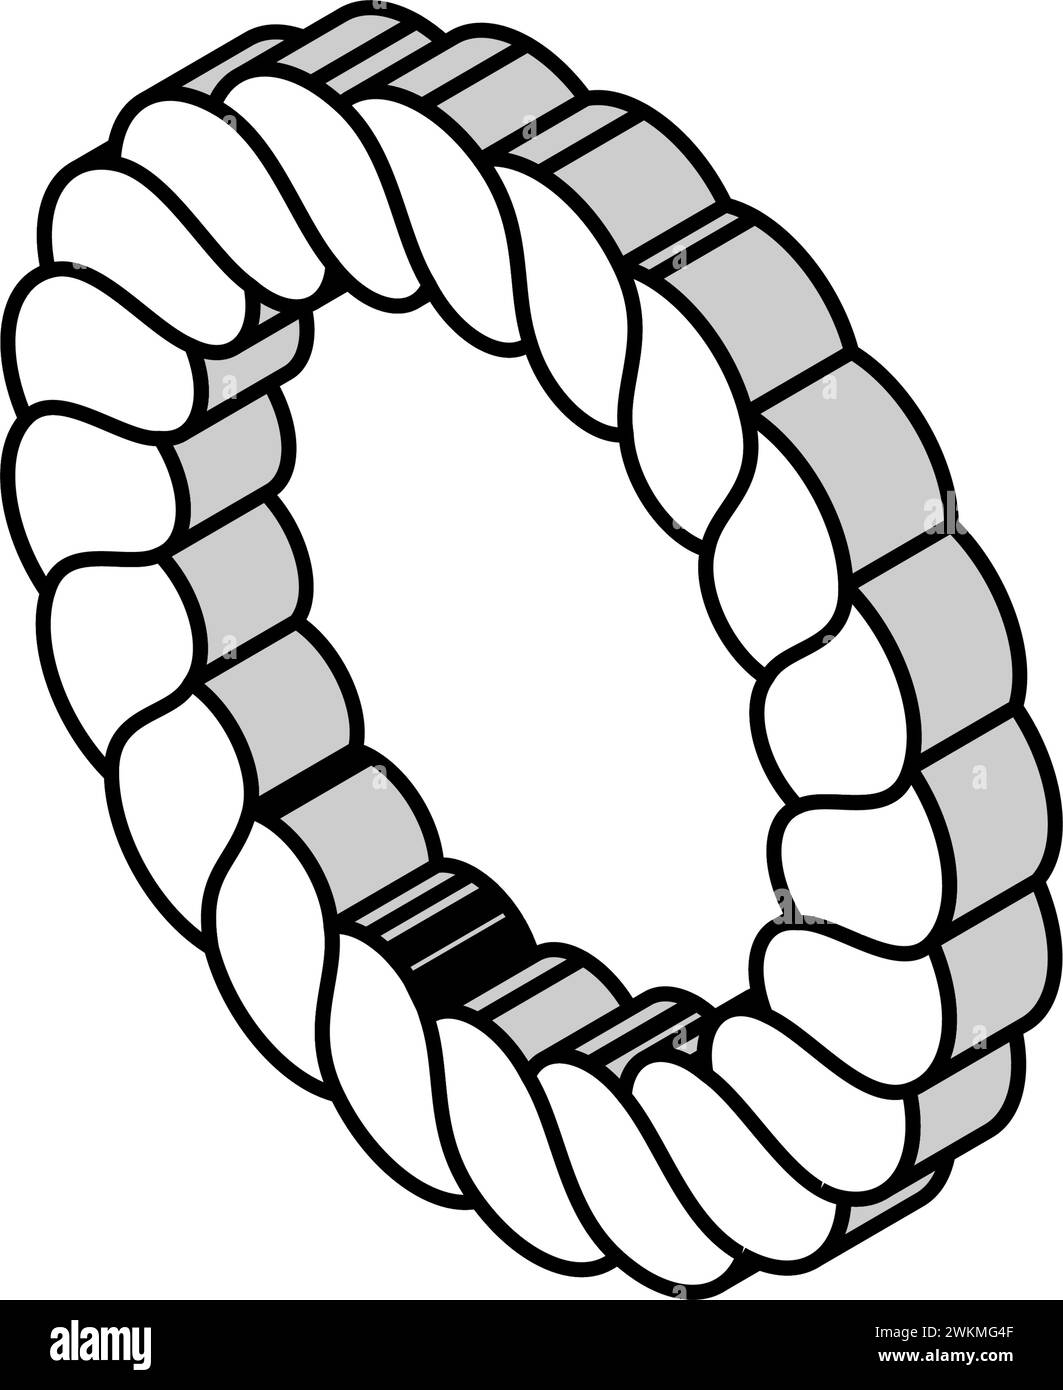 shimenawa ring shintoism isometric icon vector illustration Stock Vector